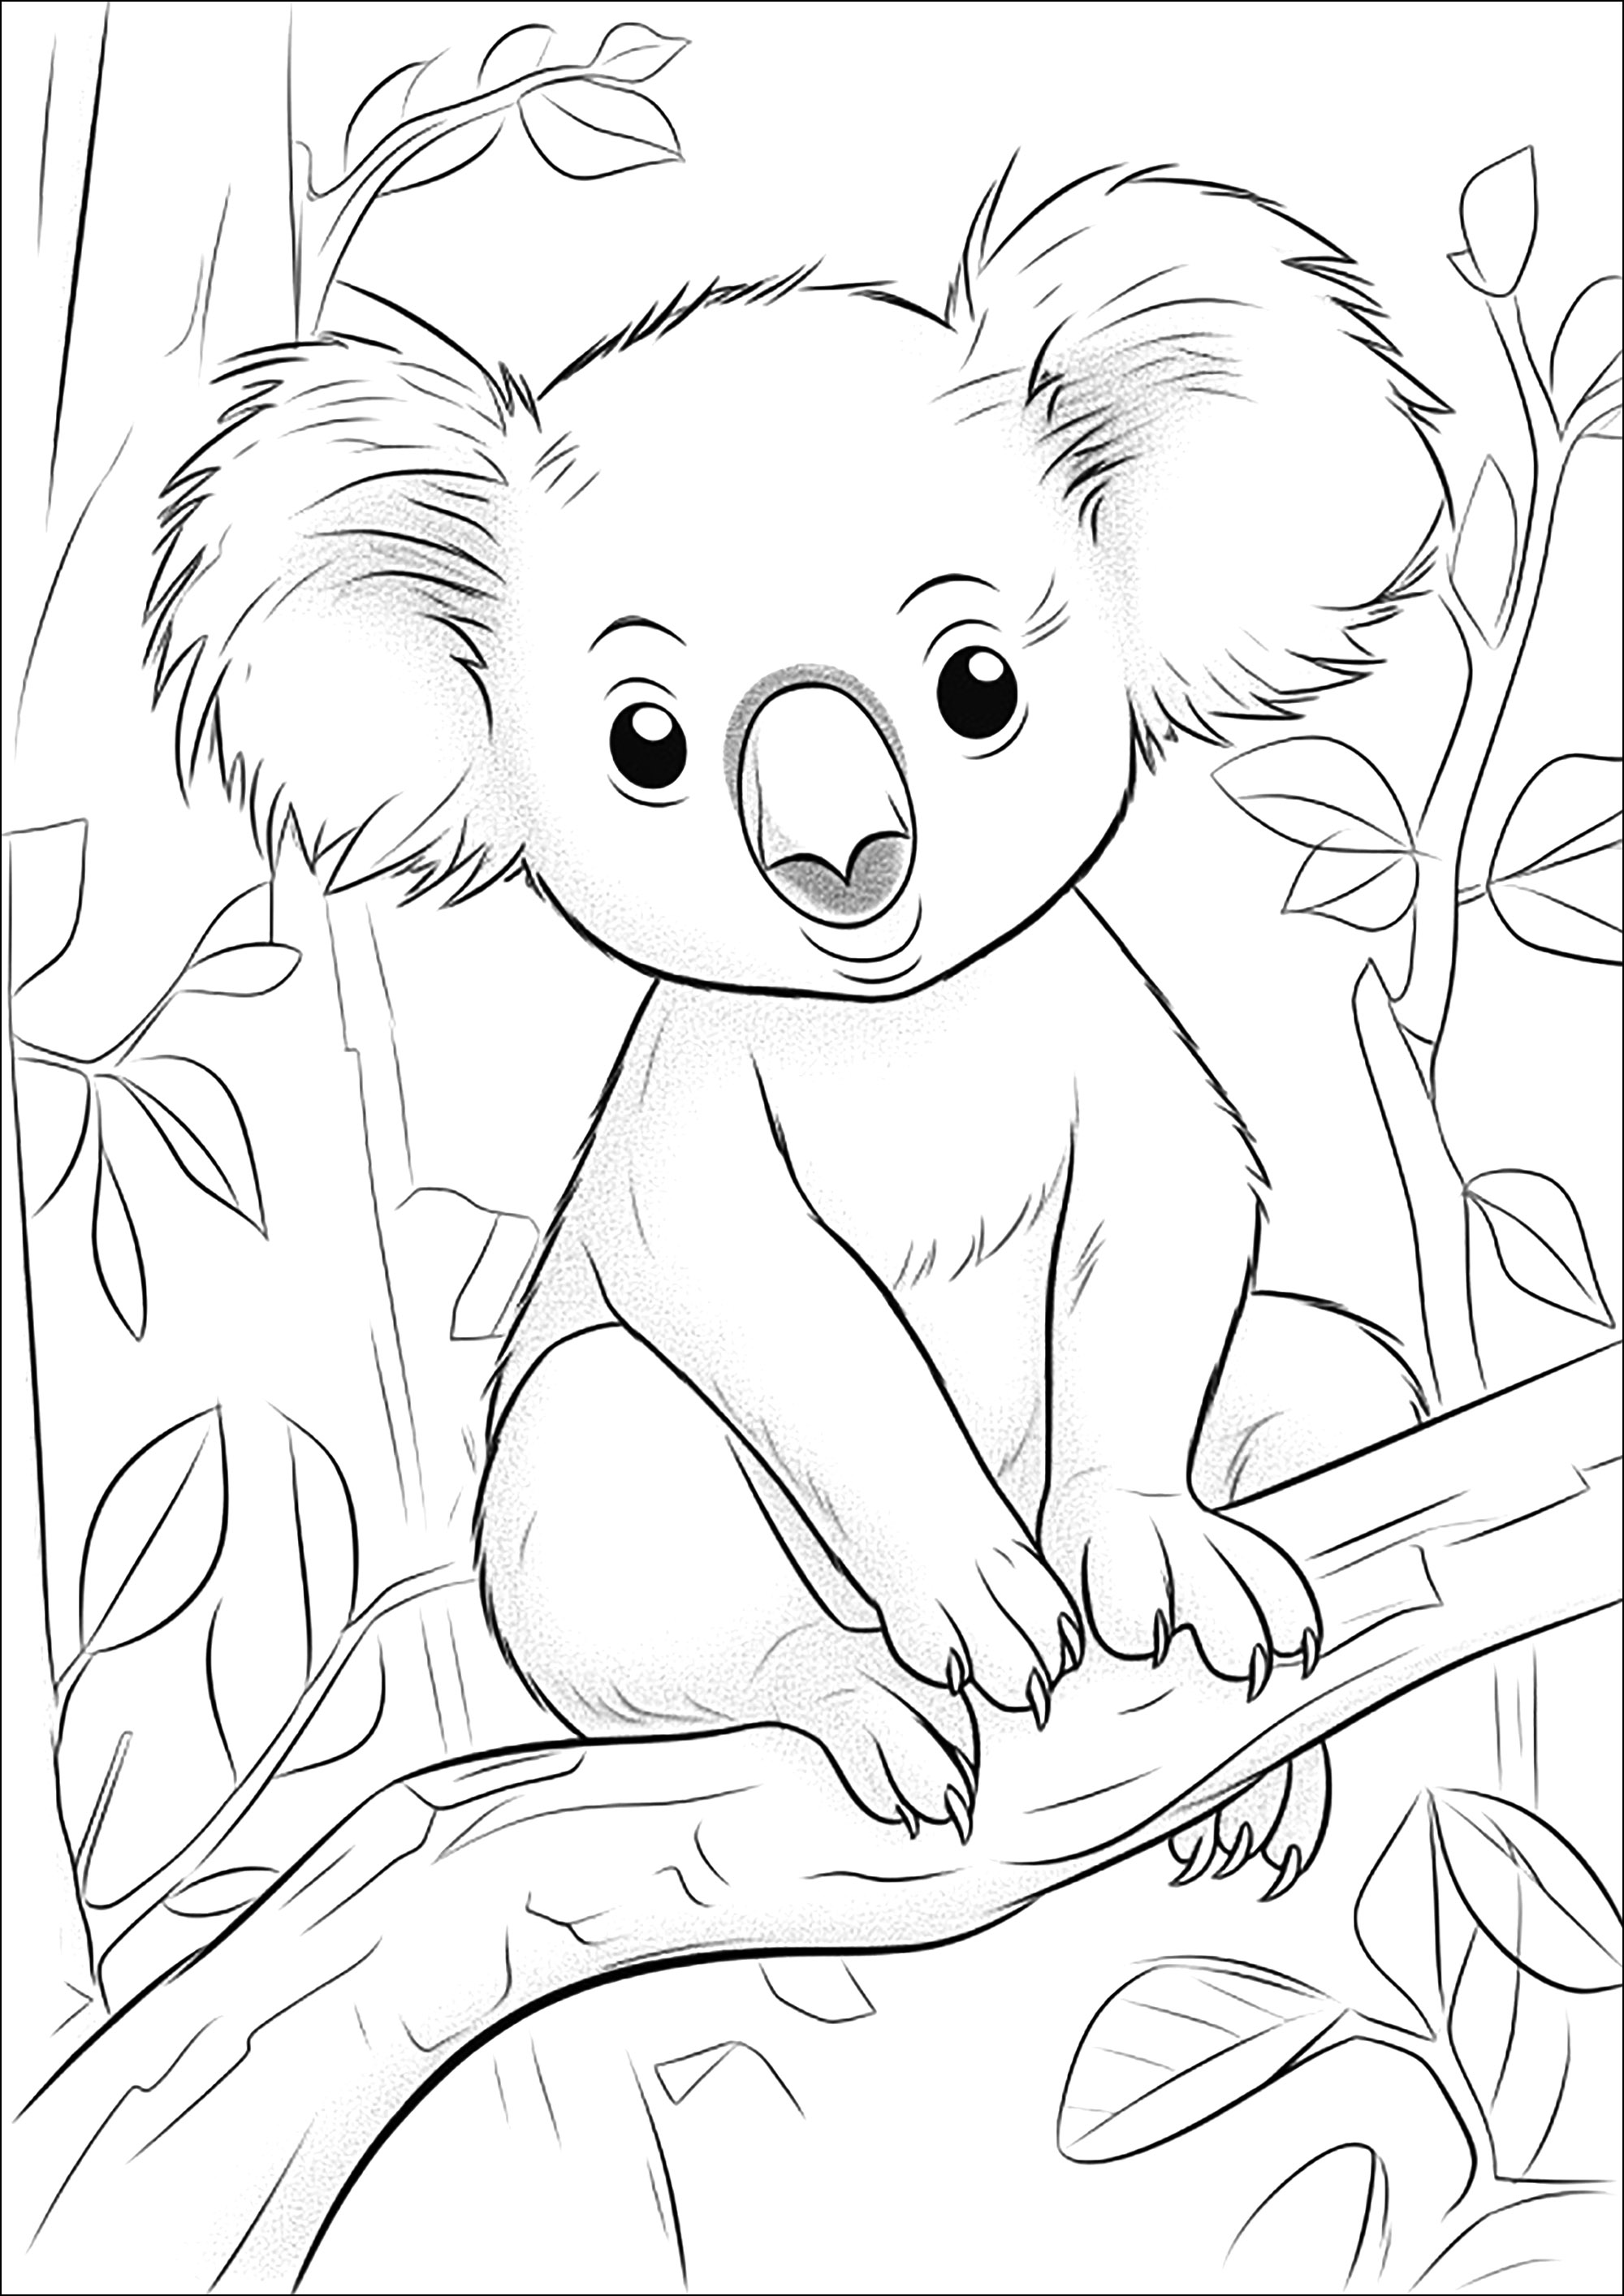 Dibujos para colorear gratis de Osos Koala para imprimir y colorear